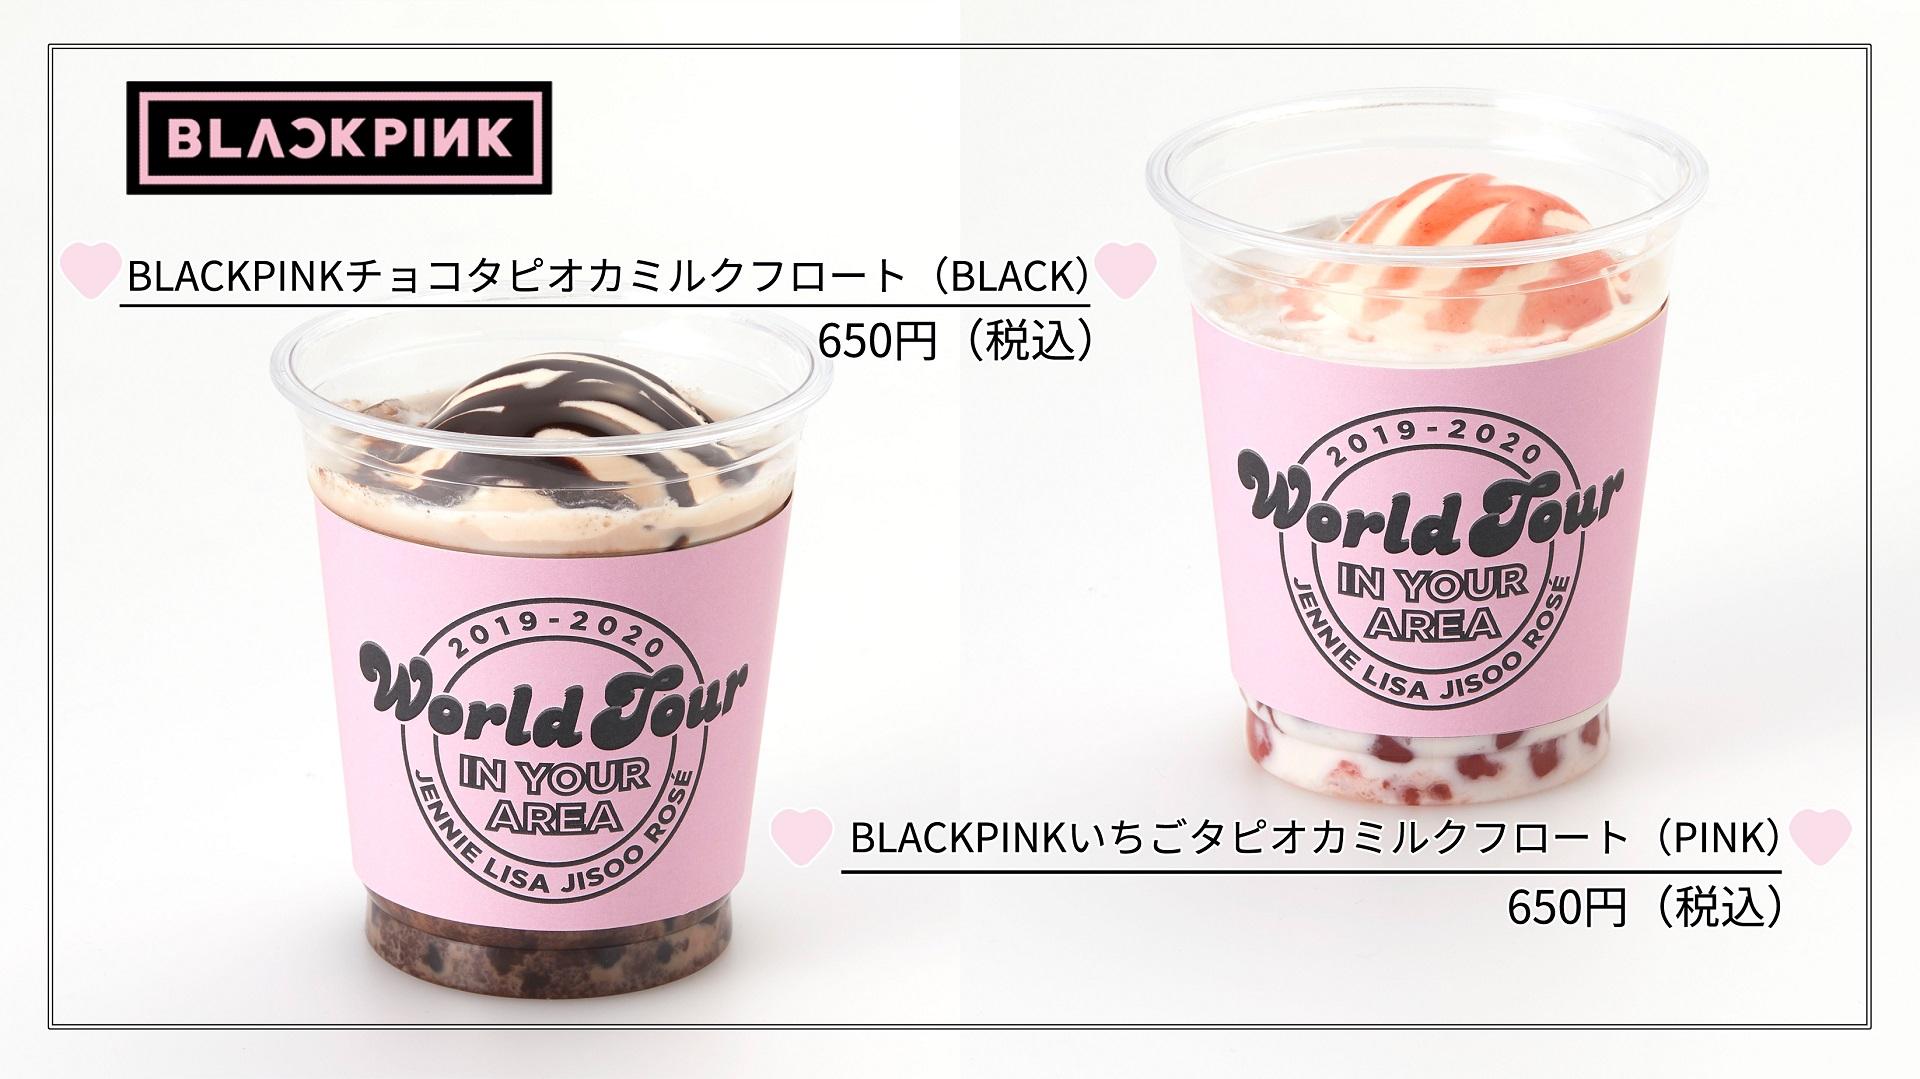 「BLACKPINK 2019-2020 WORLD TOUR IN YOUR AREA」にてオリジナルメニューを販売！| 東京ドーム | 東京ドームシティ